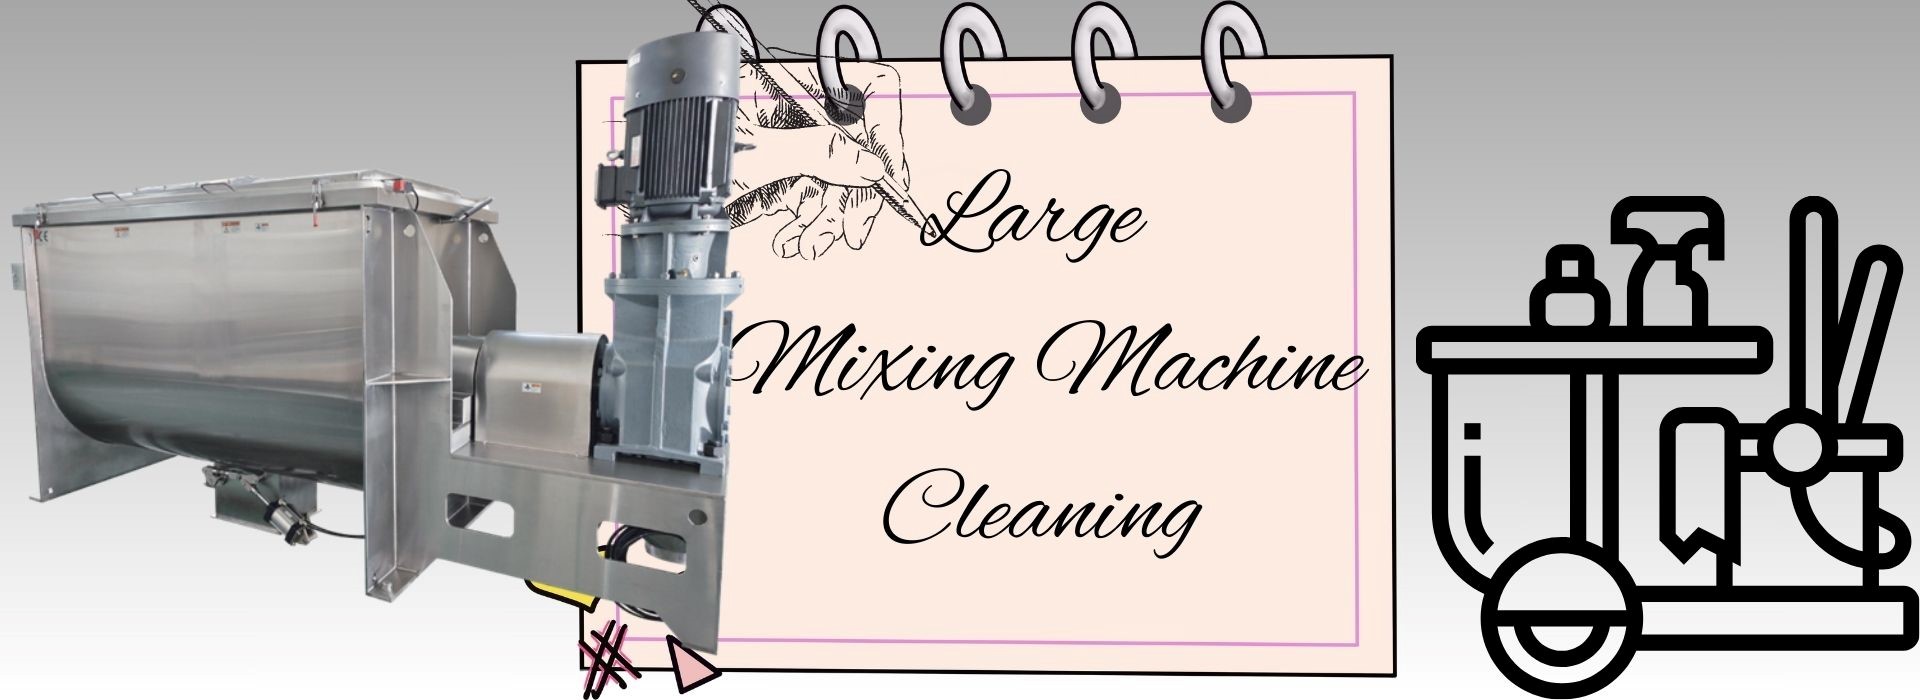 5 Methoden voor het reinigen van de grote mengmachine1